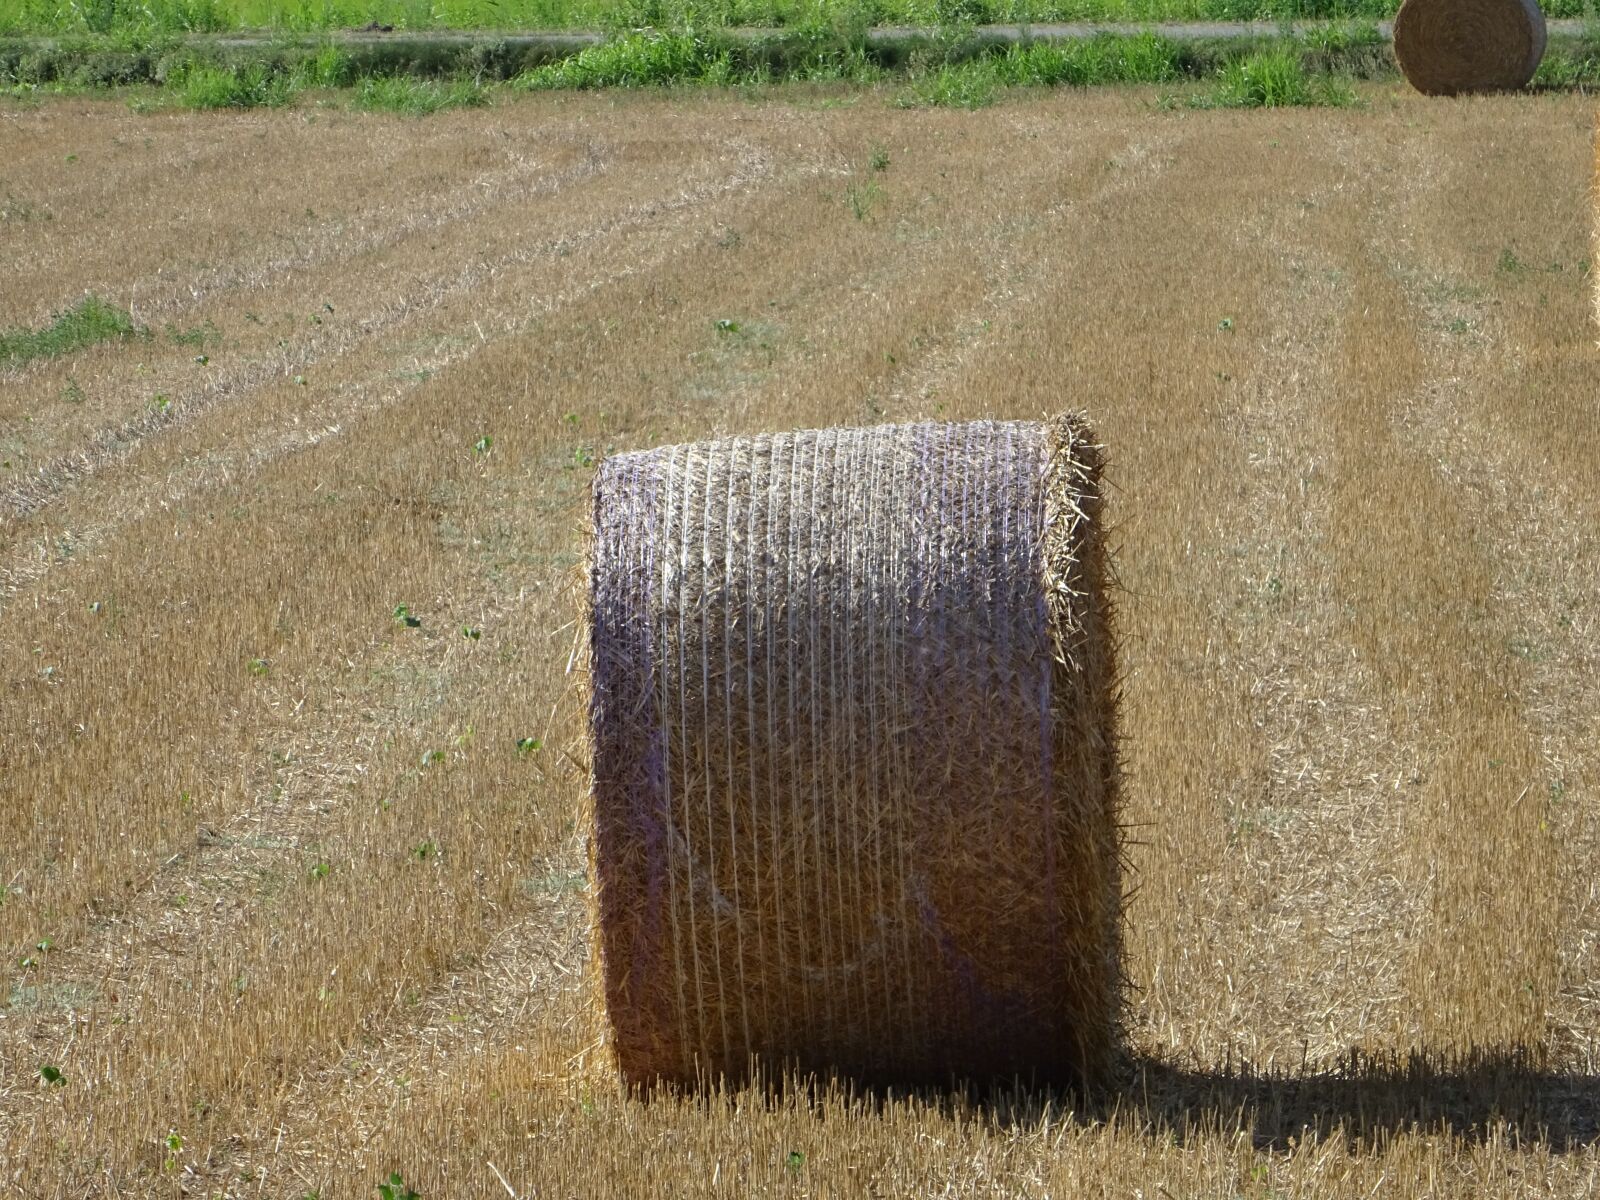 Sony DSC-HX60V sample photo. Straw bale, field, harvest photography